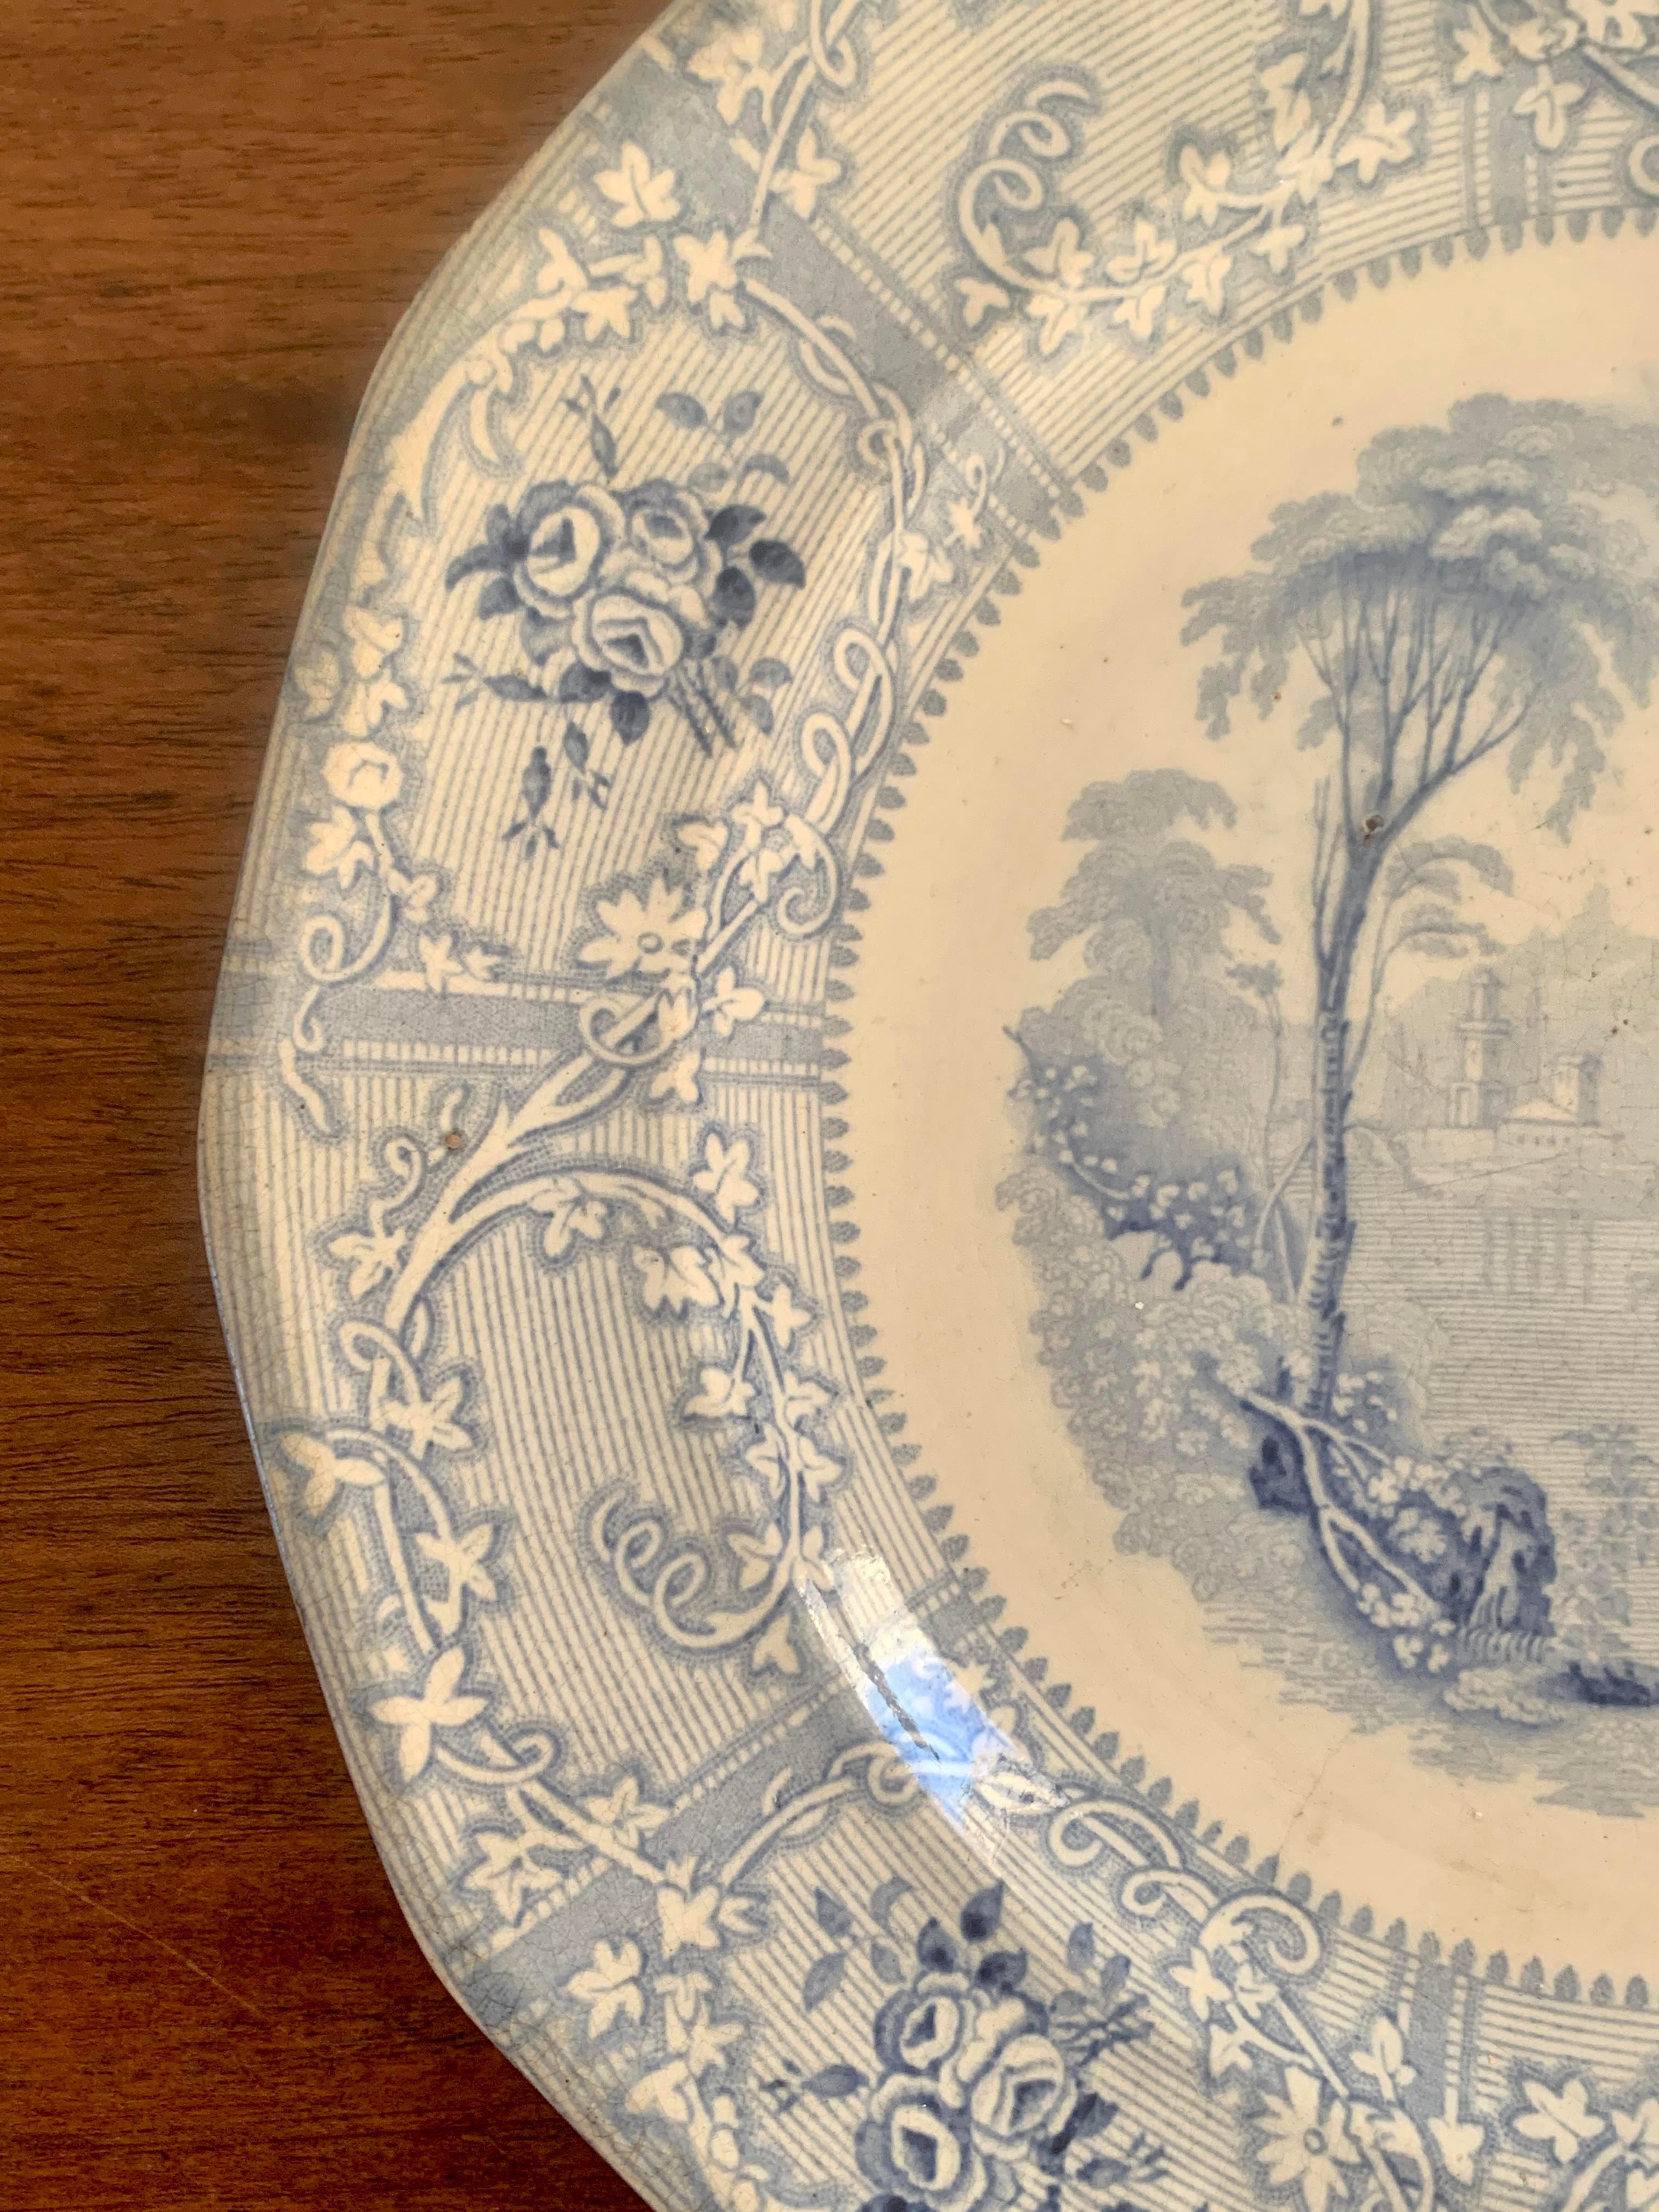 Magnifique assiette ancienne en pierre de fer bleue et blanche.

Angleterre, début du 19e siècle.

Mesures : 9,25 